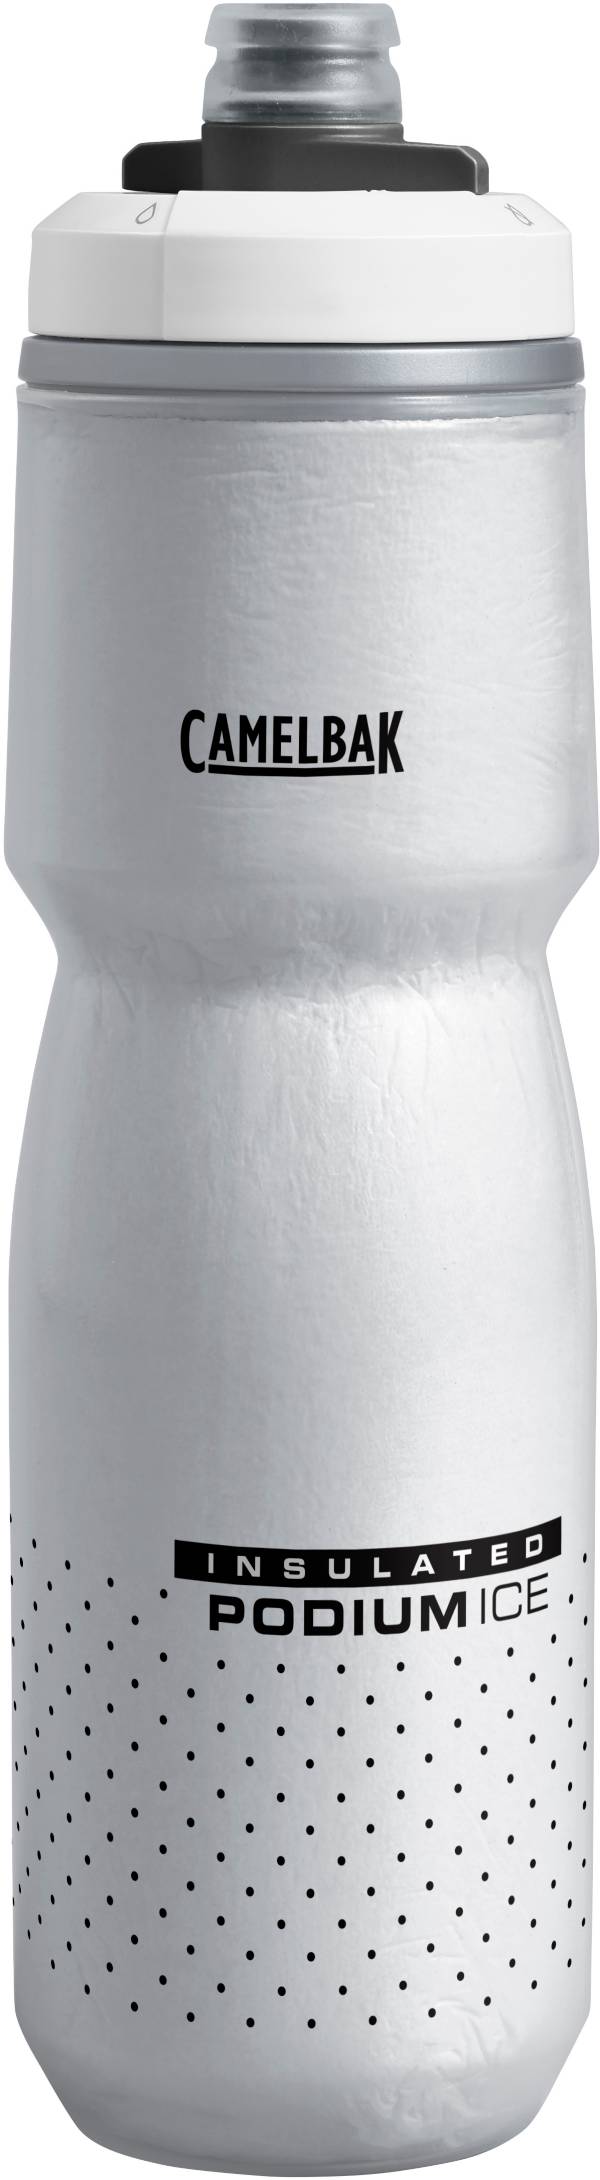 CamelBak Podium Ice 21 oz. Water Bottle product image